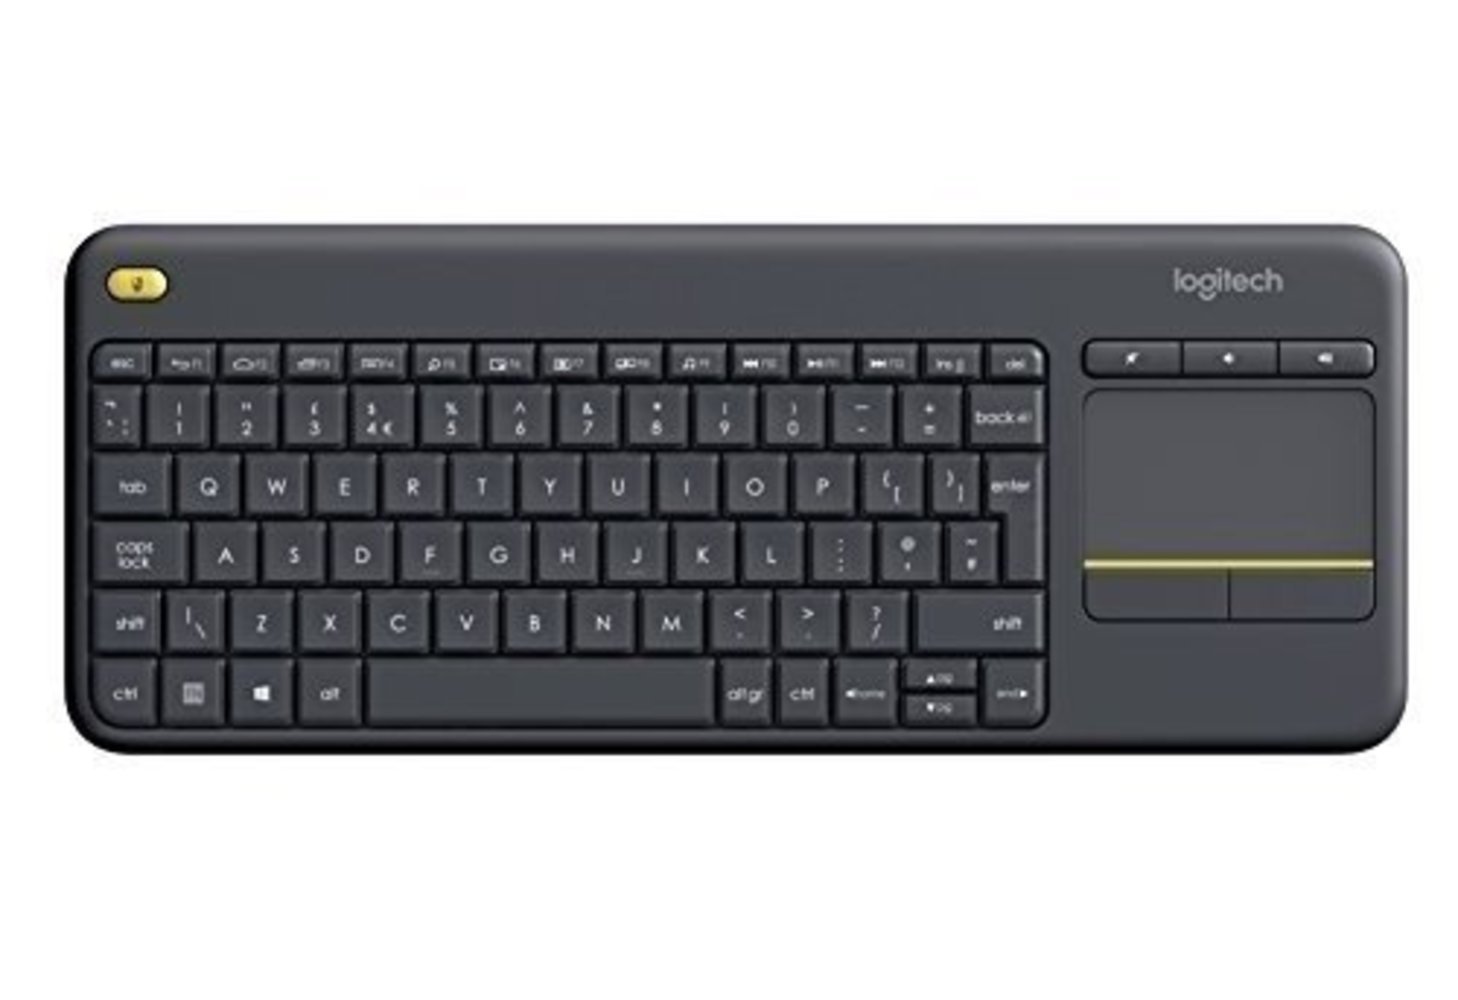 Logitech Wireless Touch Keyboard K400 Plus - Tastatur - drahtlos - 2.4 GHz - Spanisch - Schwarz